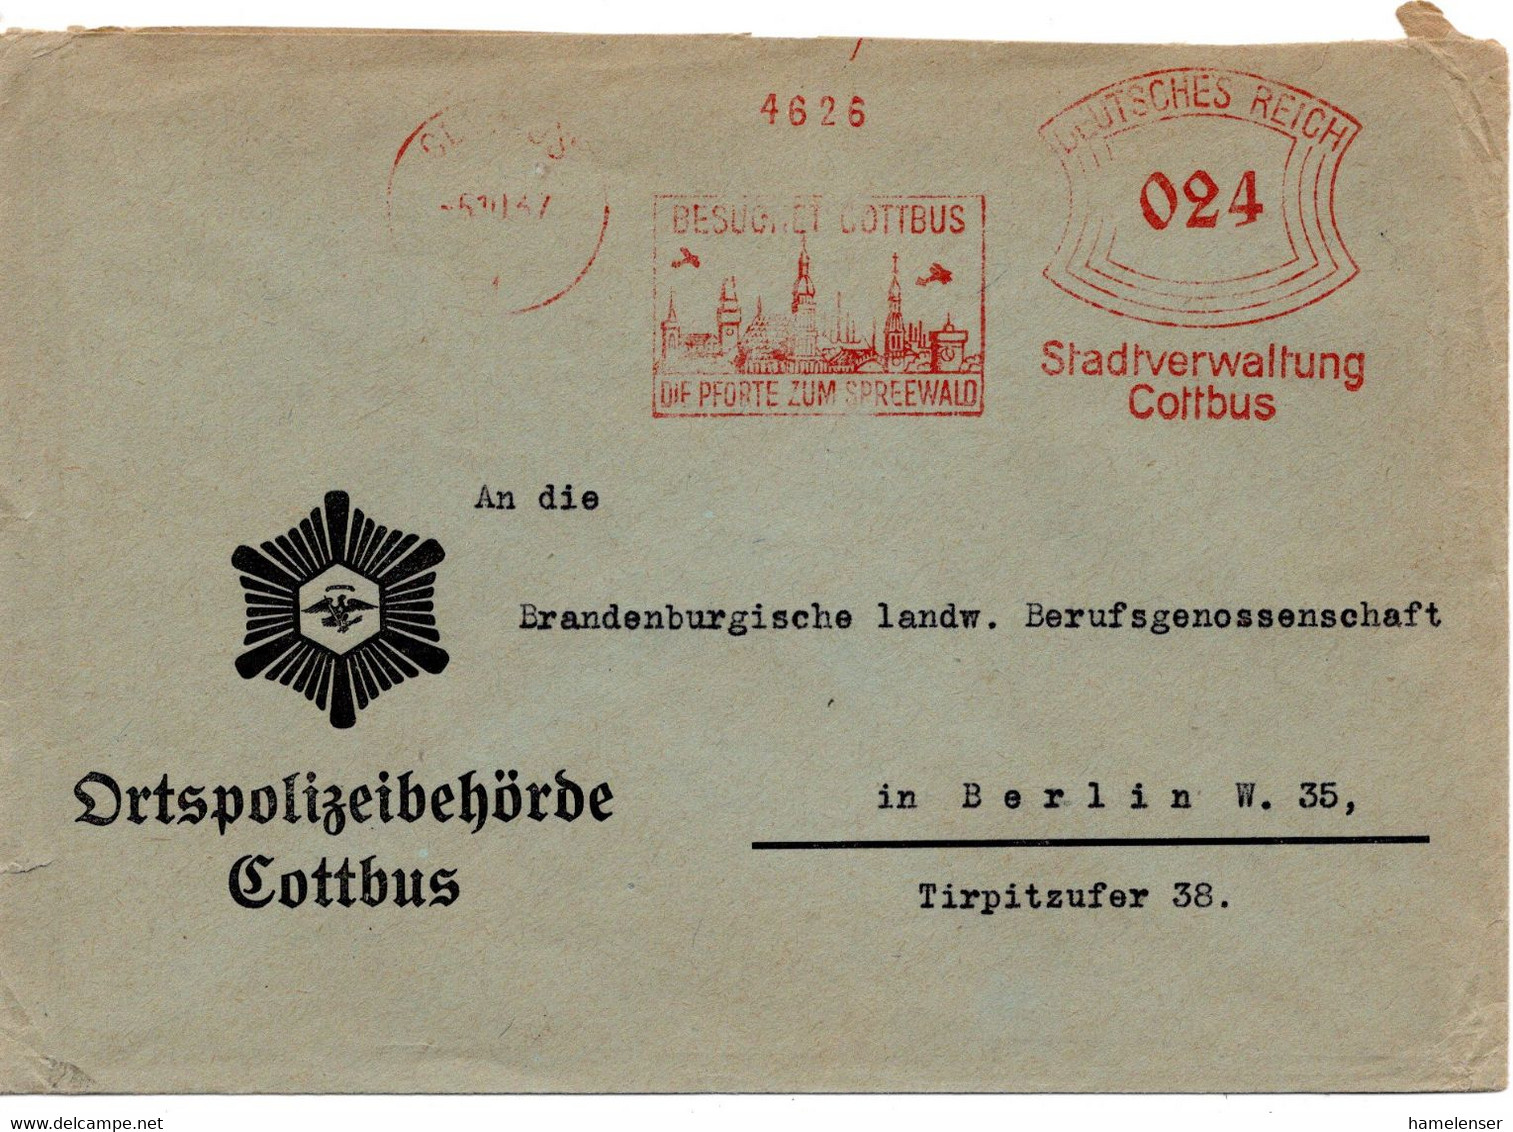 56593 - Deutsches Reich - 1937 - 24Pfg AbsFreistpl COTTBUS - BESUCHET COTTBUS ... -> Berlin, Abs; Ortspolizeibehoerde - Polizei - Gendarmerie